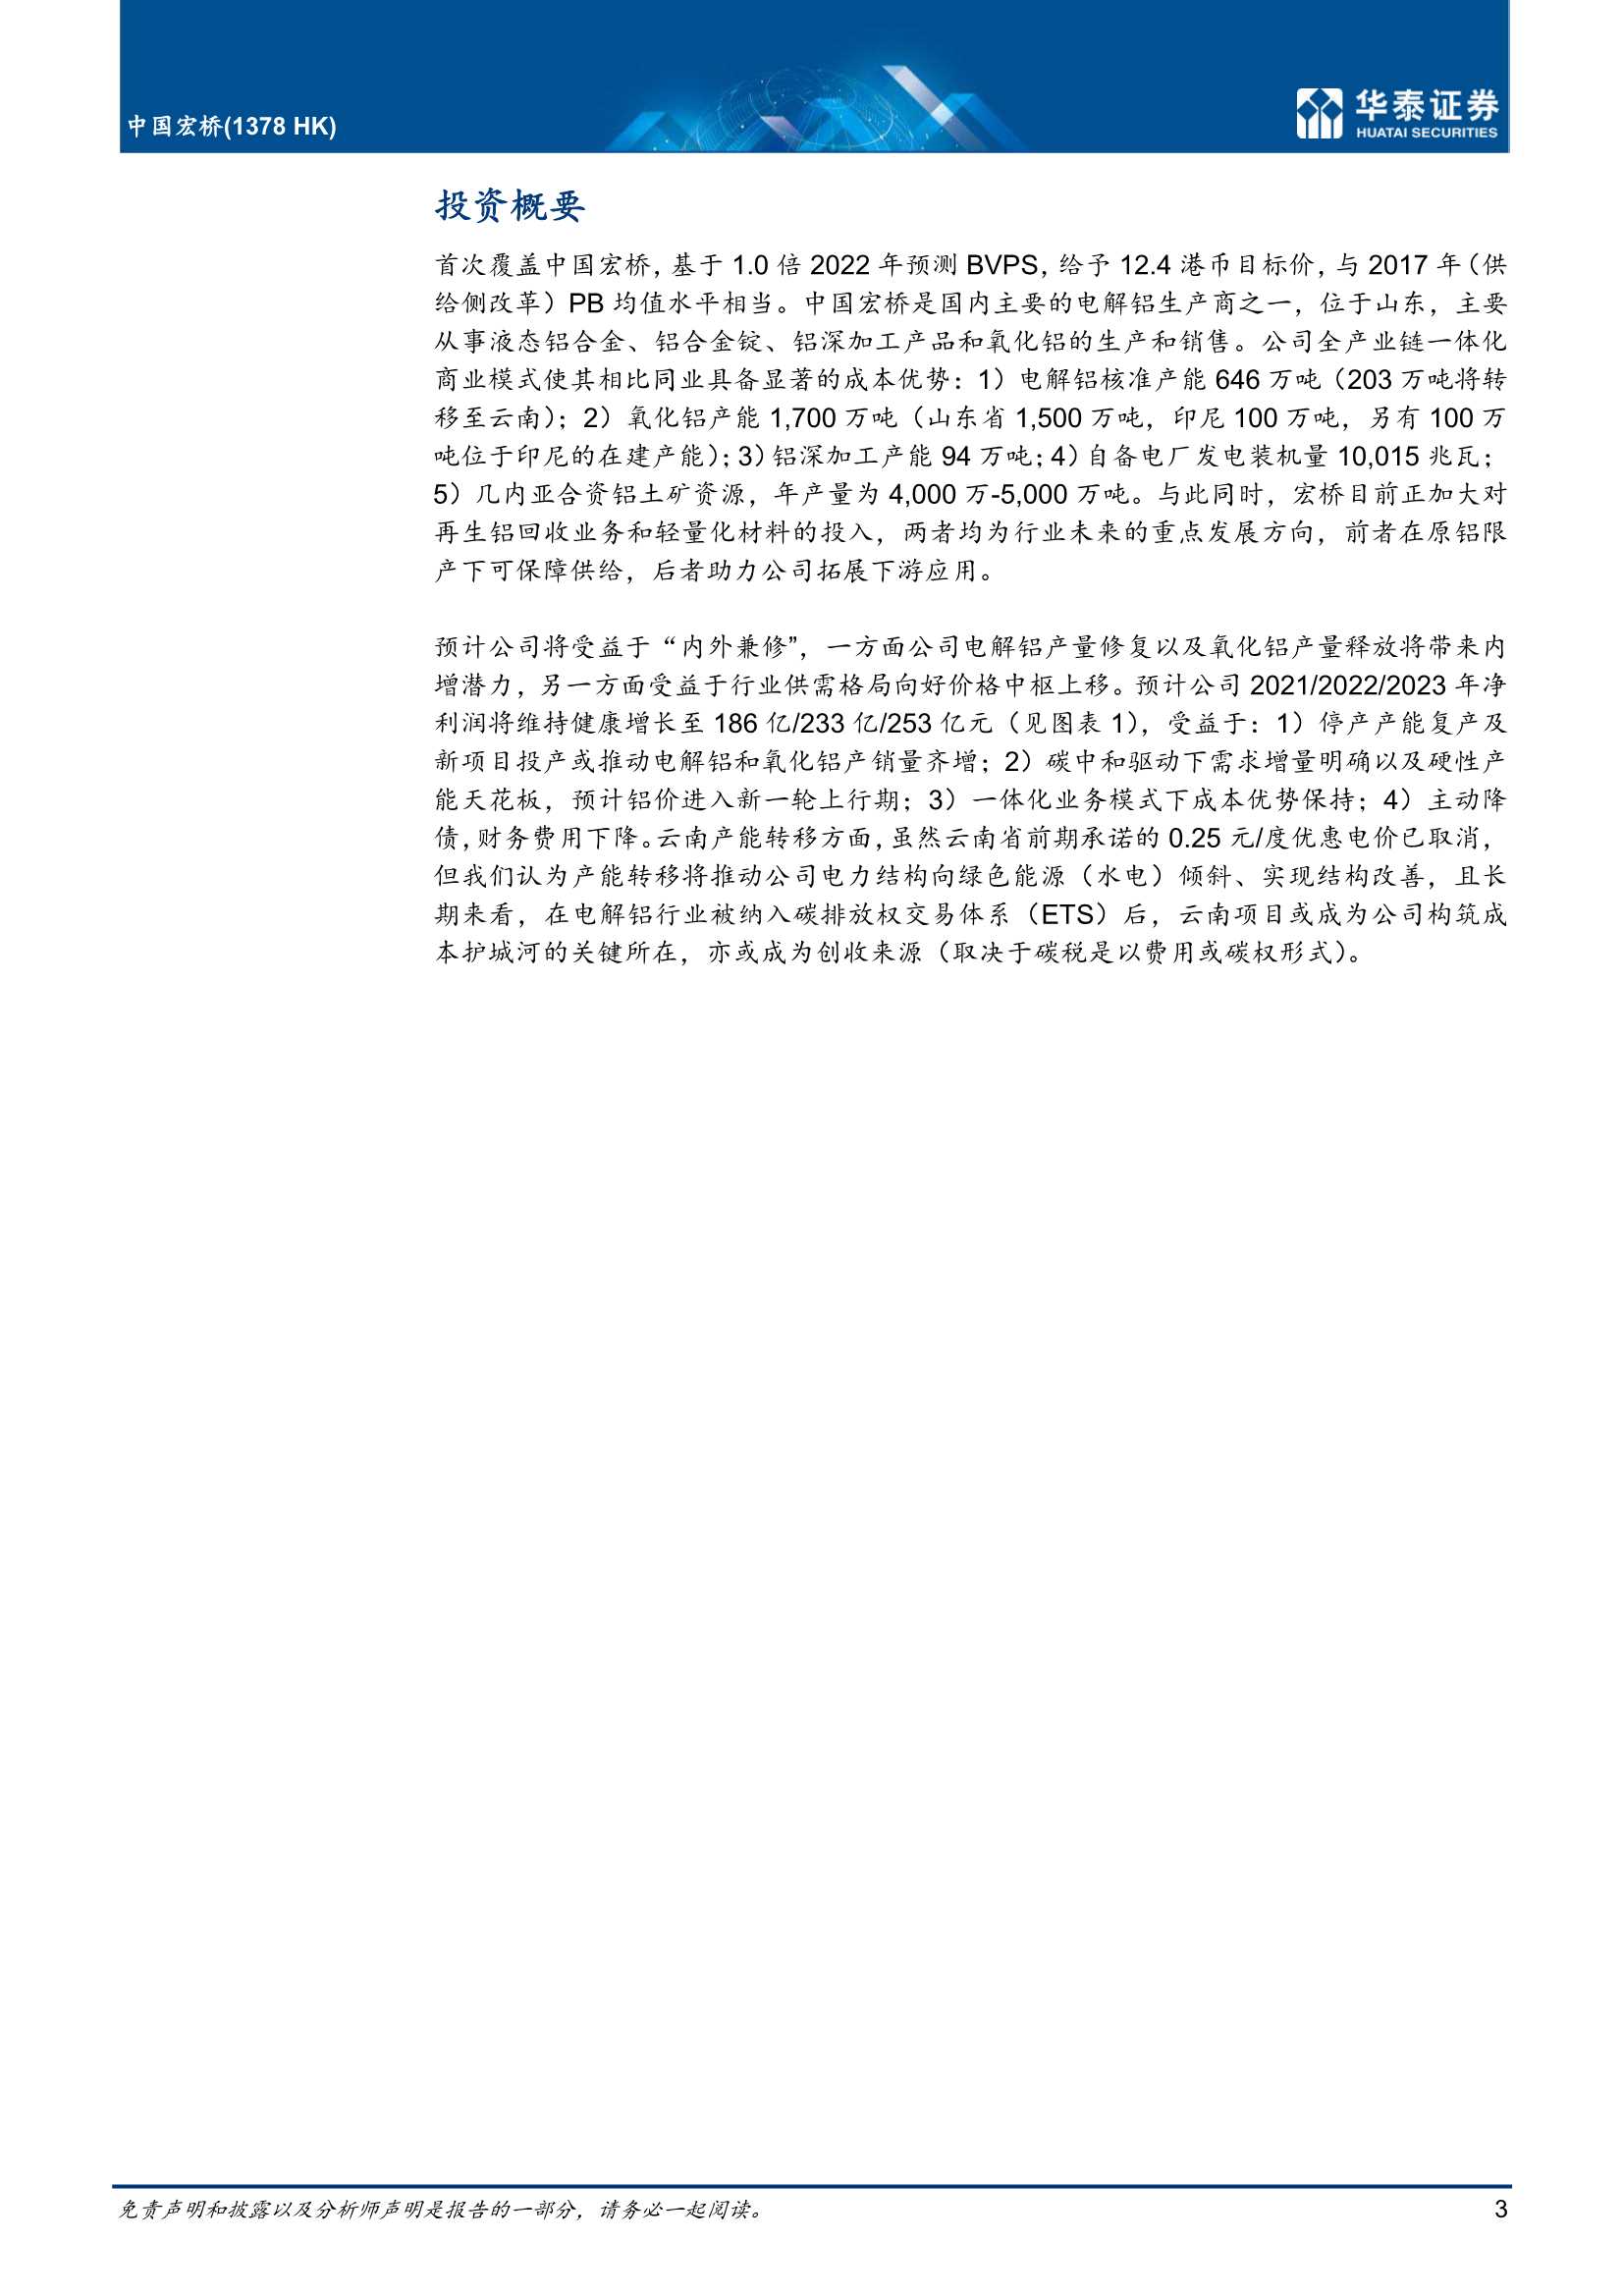 华泰证券-中国宏桥-1378.HK-公司内生增长 行业周期向上共振-20211212-21页